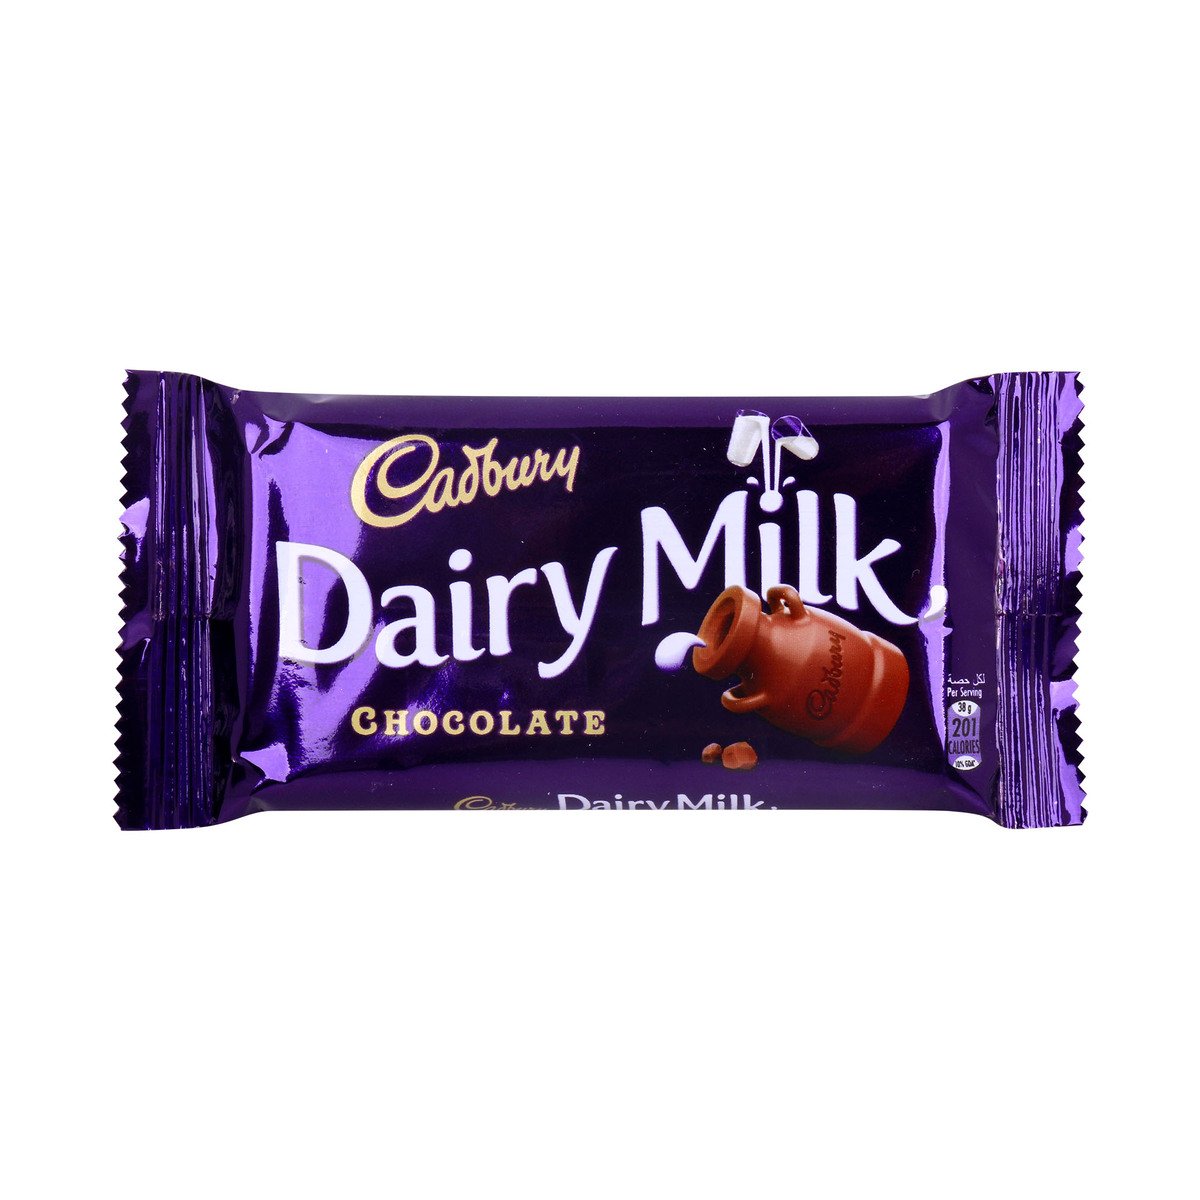 Cadbury Dairy Milk Chocolate 38g Online at Best Price | Covrd ...